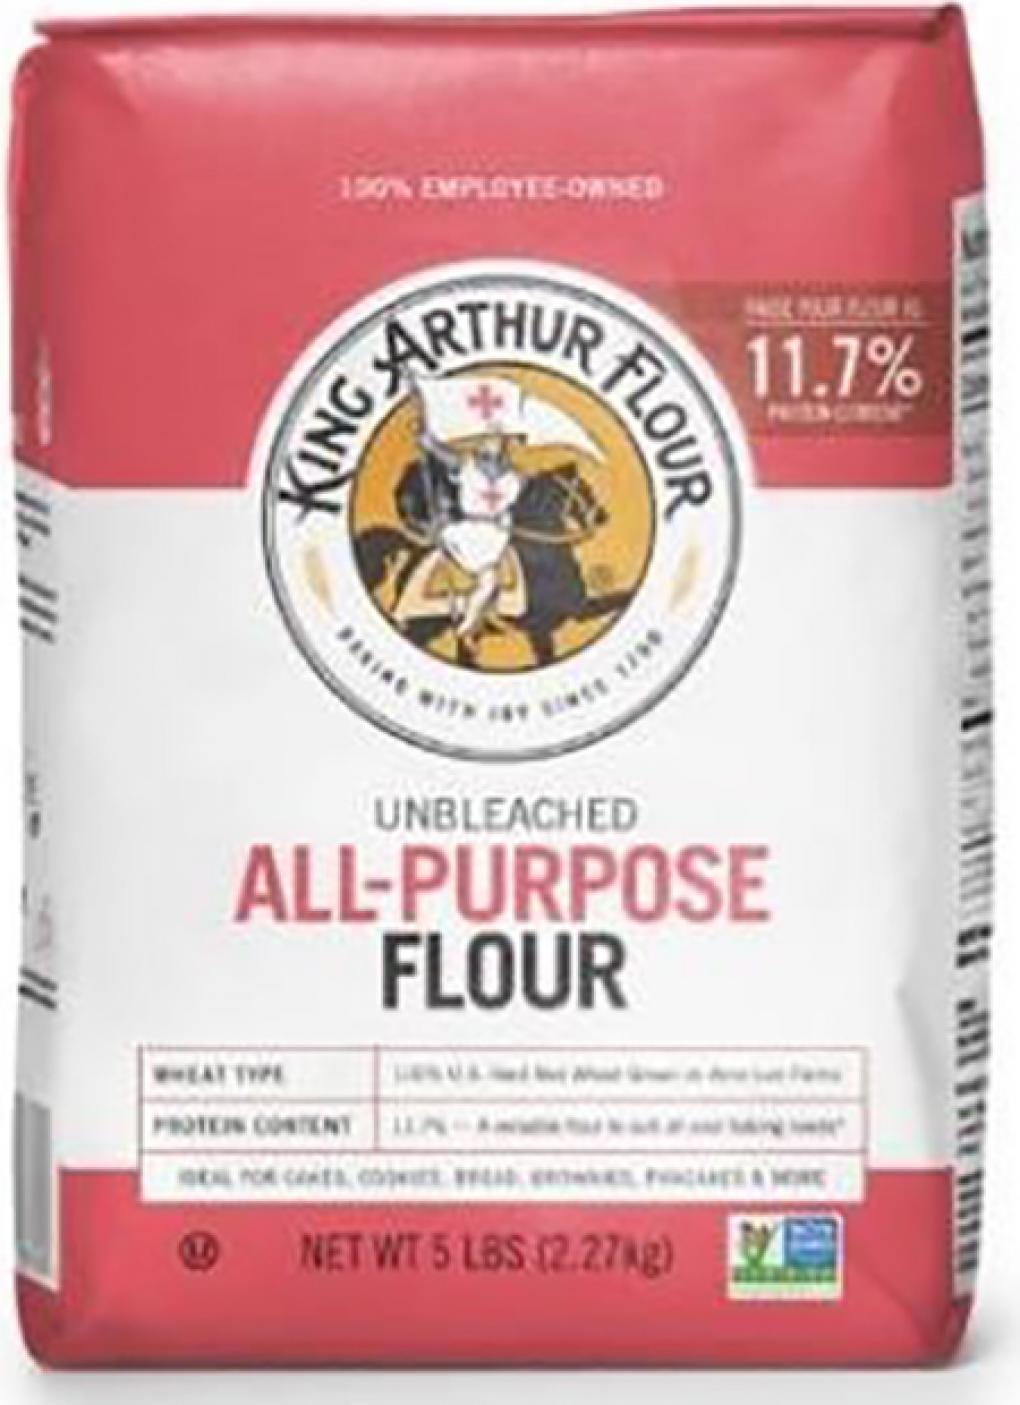 Recalled King Arthur Flour